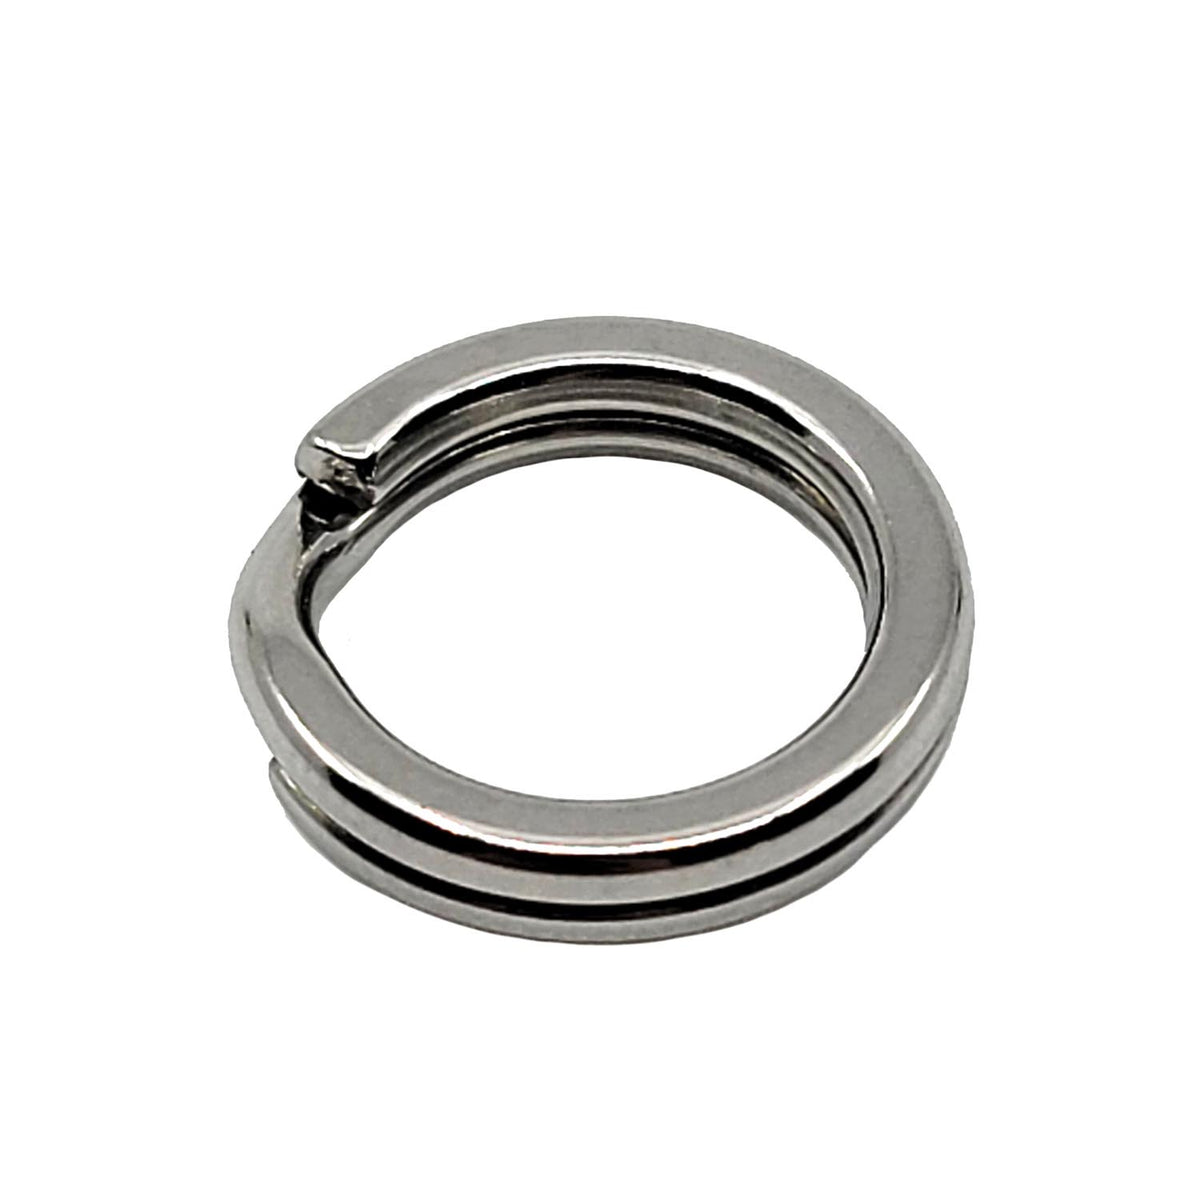 Buy Nomad Design Split Ring Pliers online at